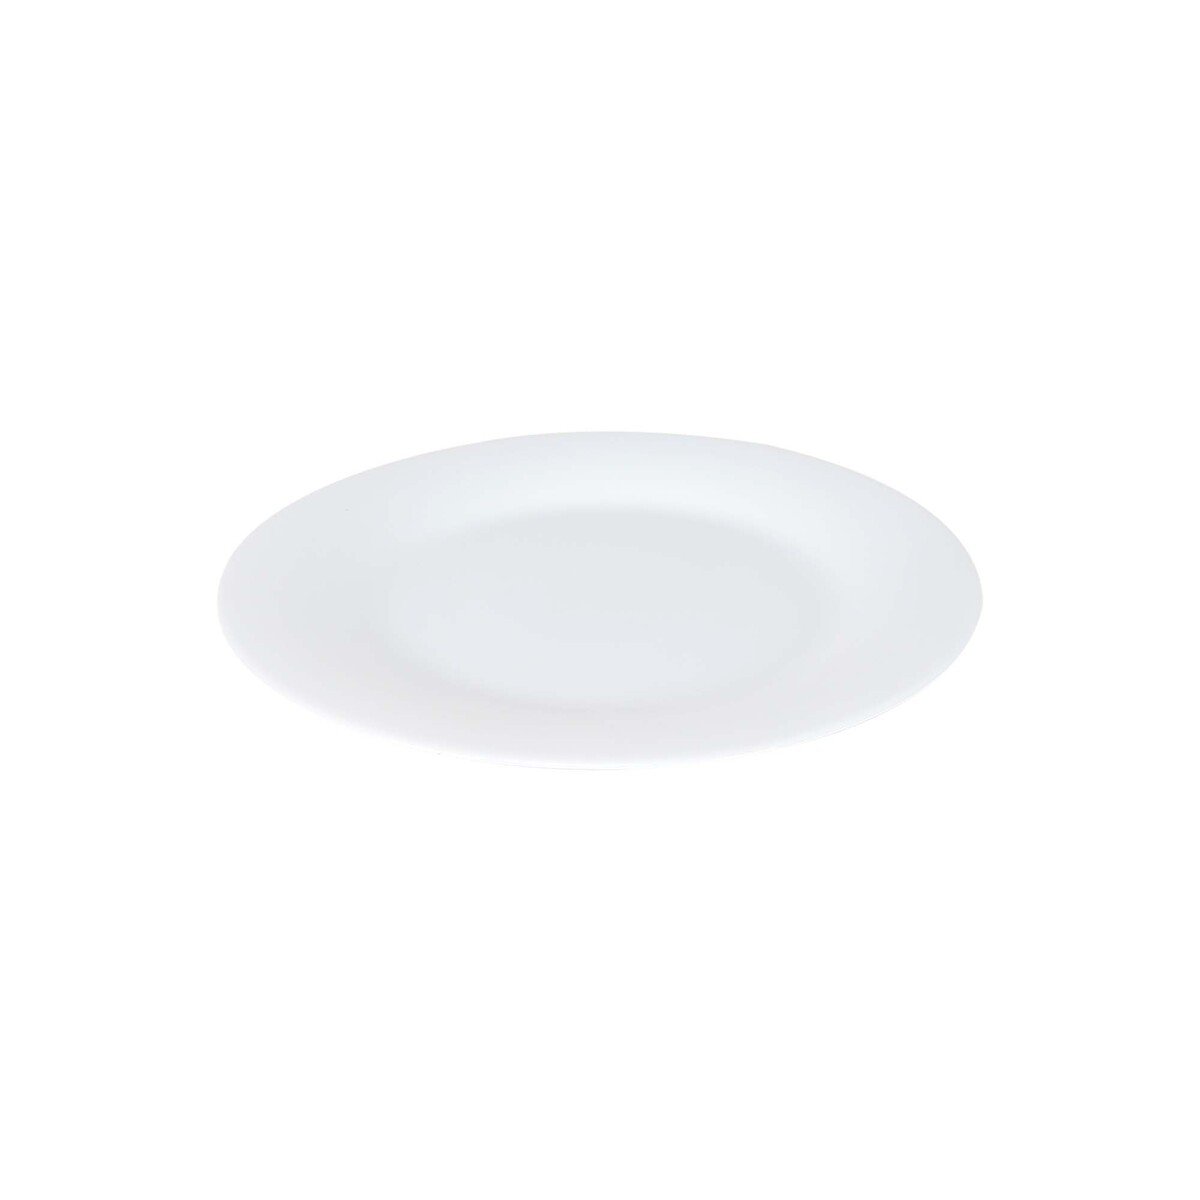 Chefline Dinner Plate 10in 1pc COR10WH White